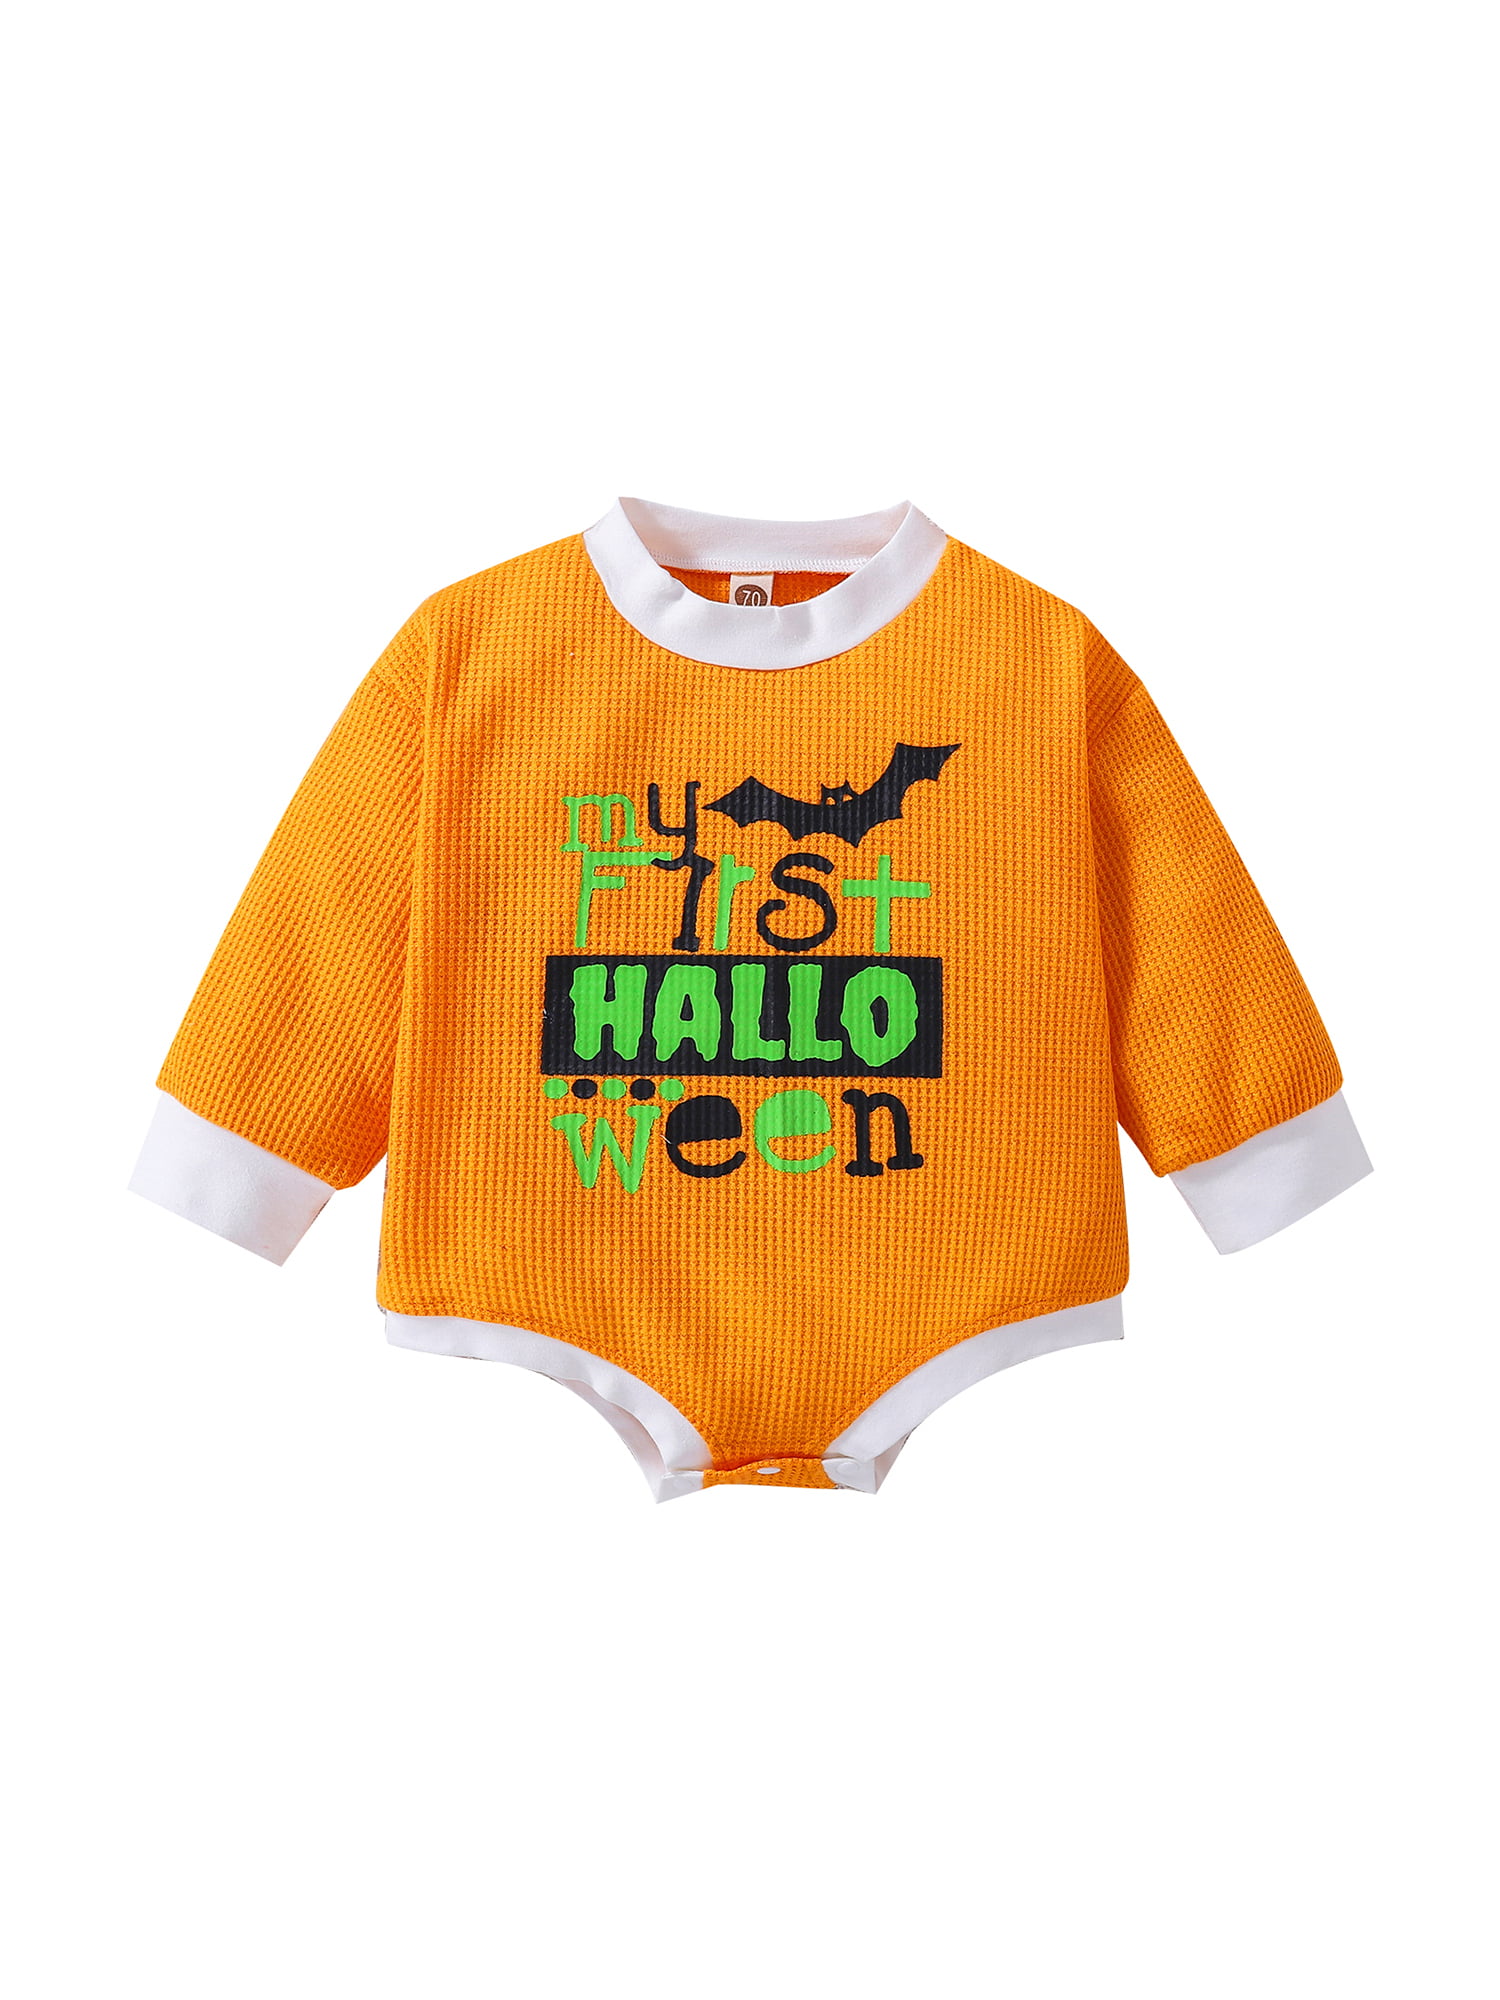 Halloween Romper Baby Halloween,Harem Romper,My first Halloween size 3-6 months 